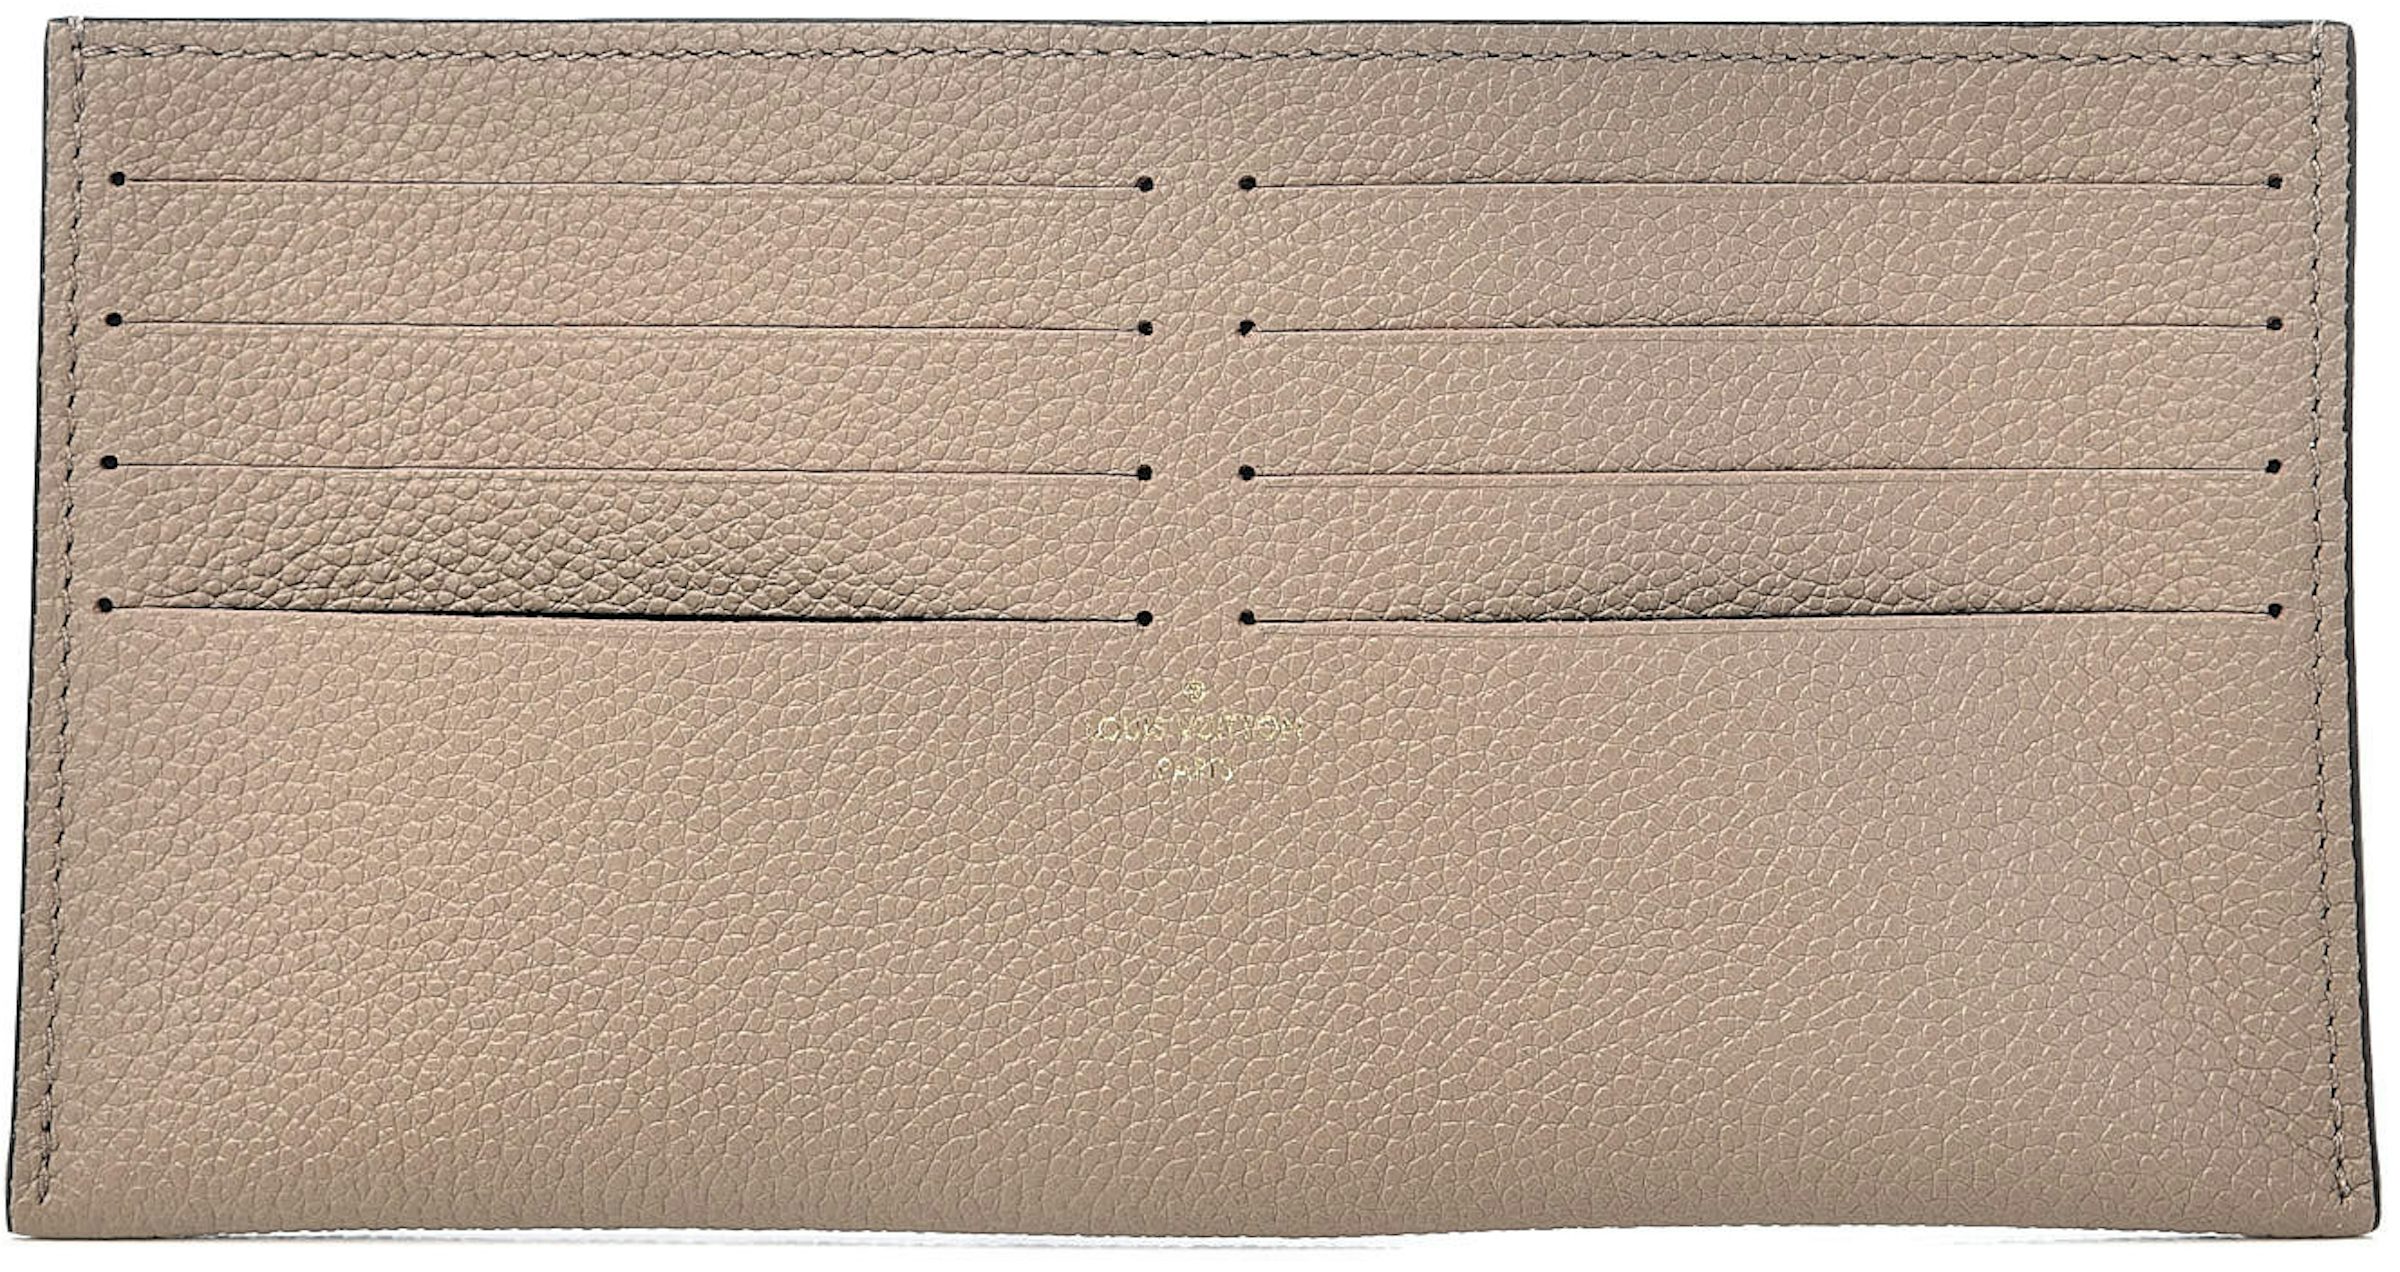 LOUIS VUITTON Monogram Felicie Chain Wallet Card Holder Insert TT2128